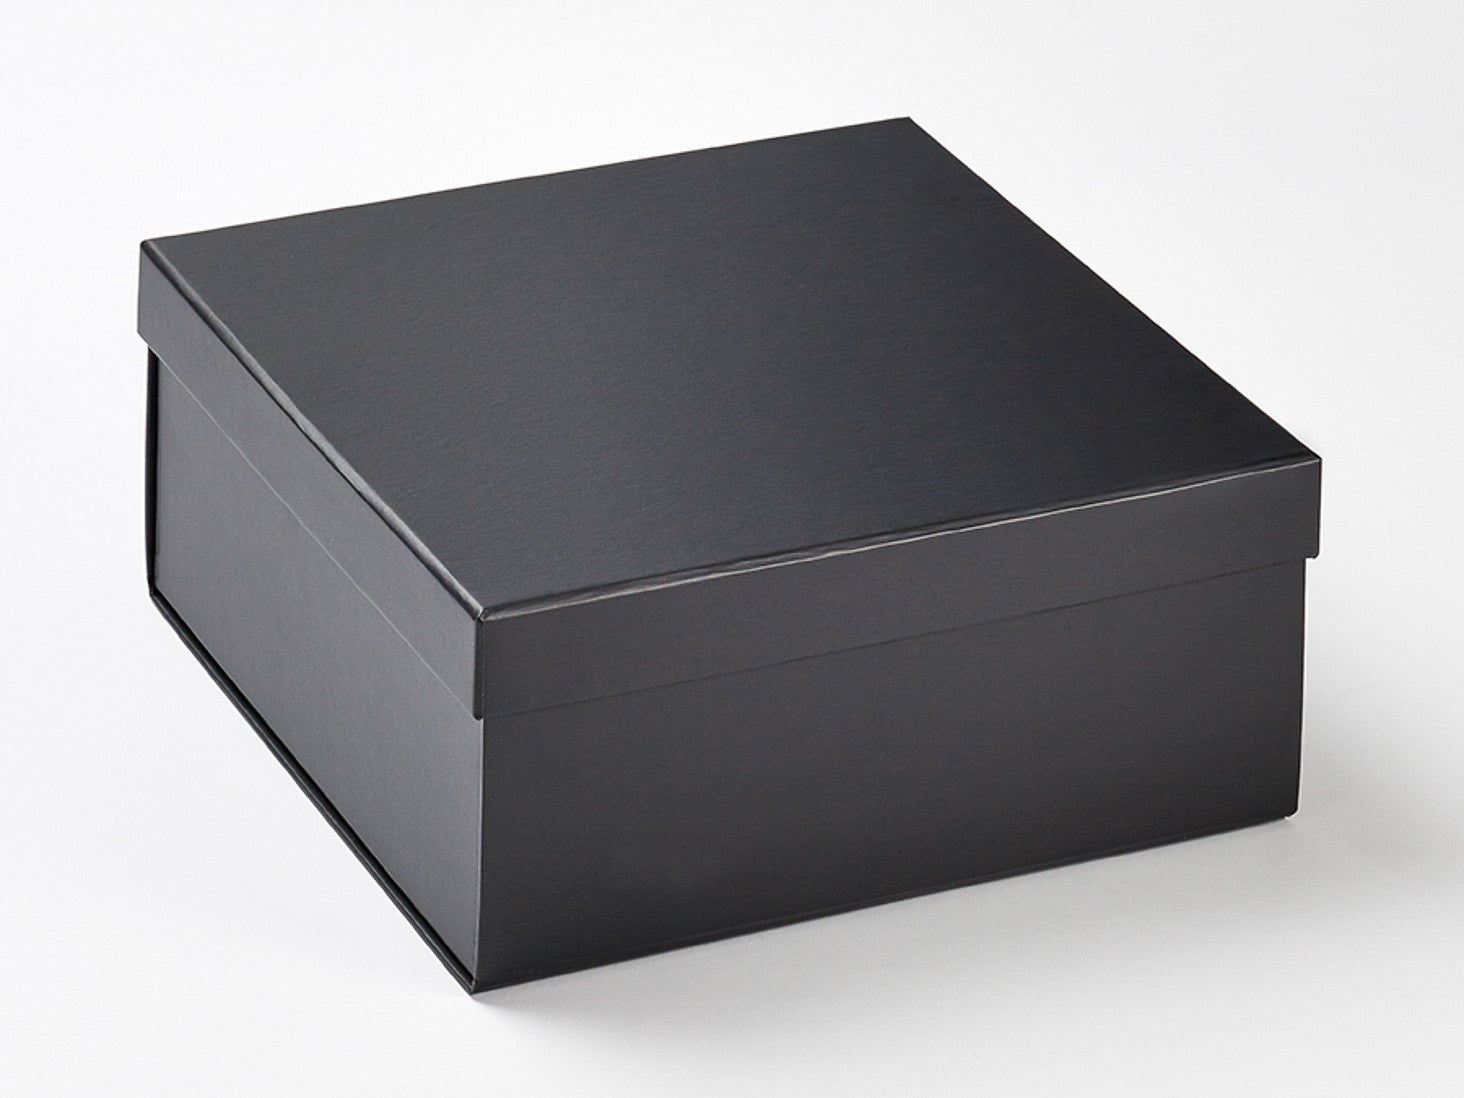 Basic Type of Gift Box